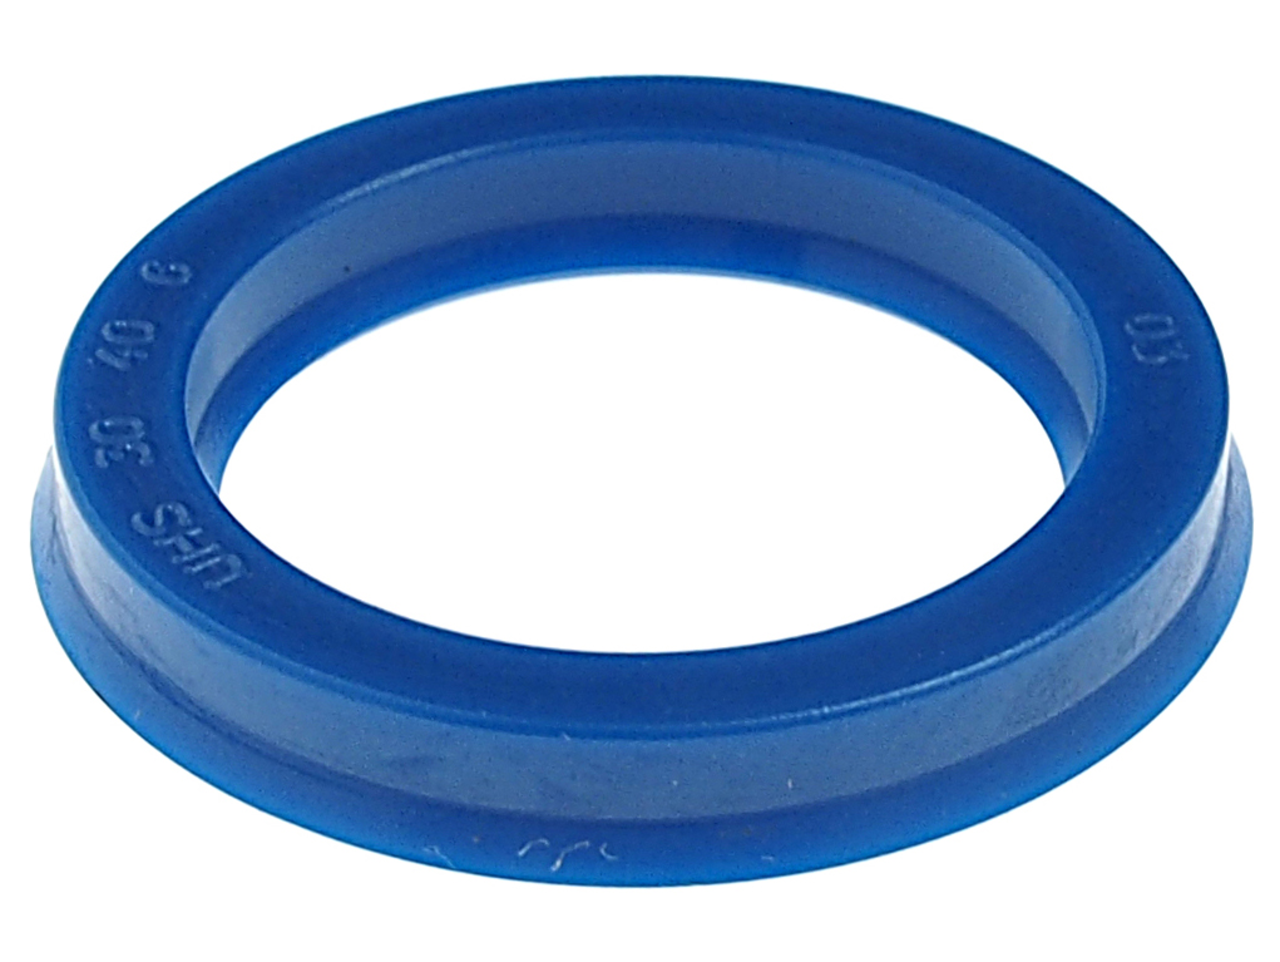 Ремкомплект для цилиндра JTC-4885 (09) кольцо уплотнительное JTC купить